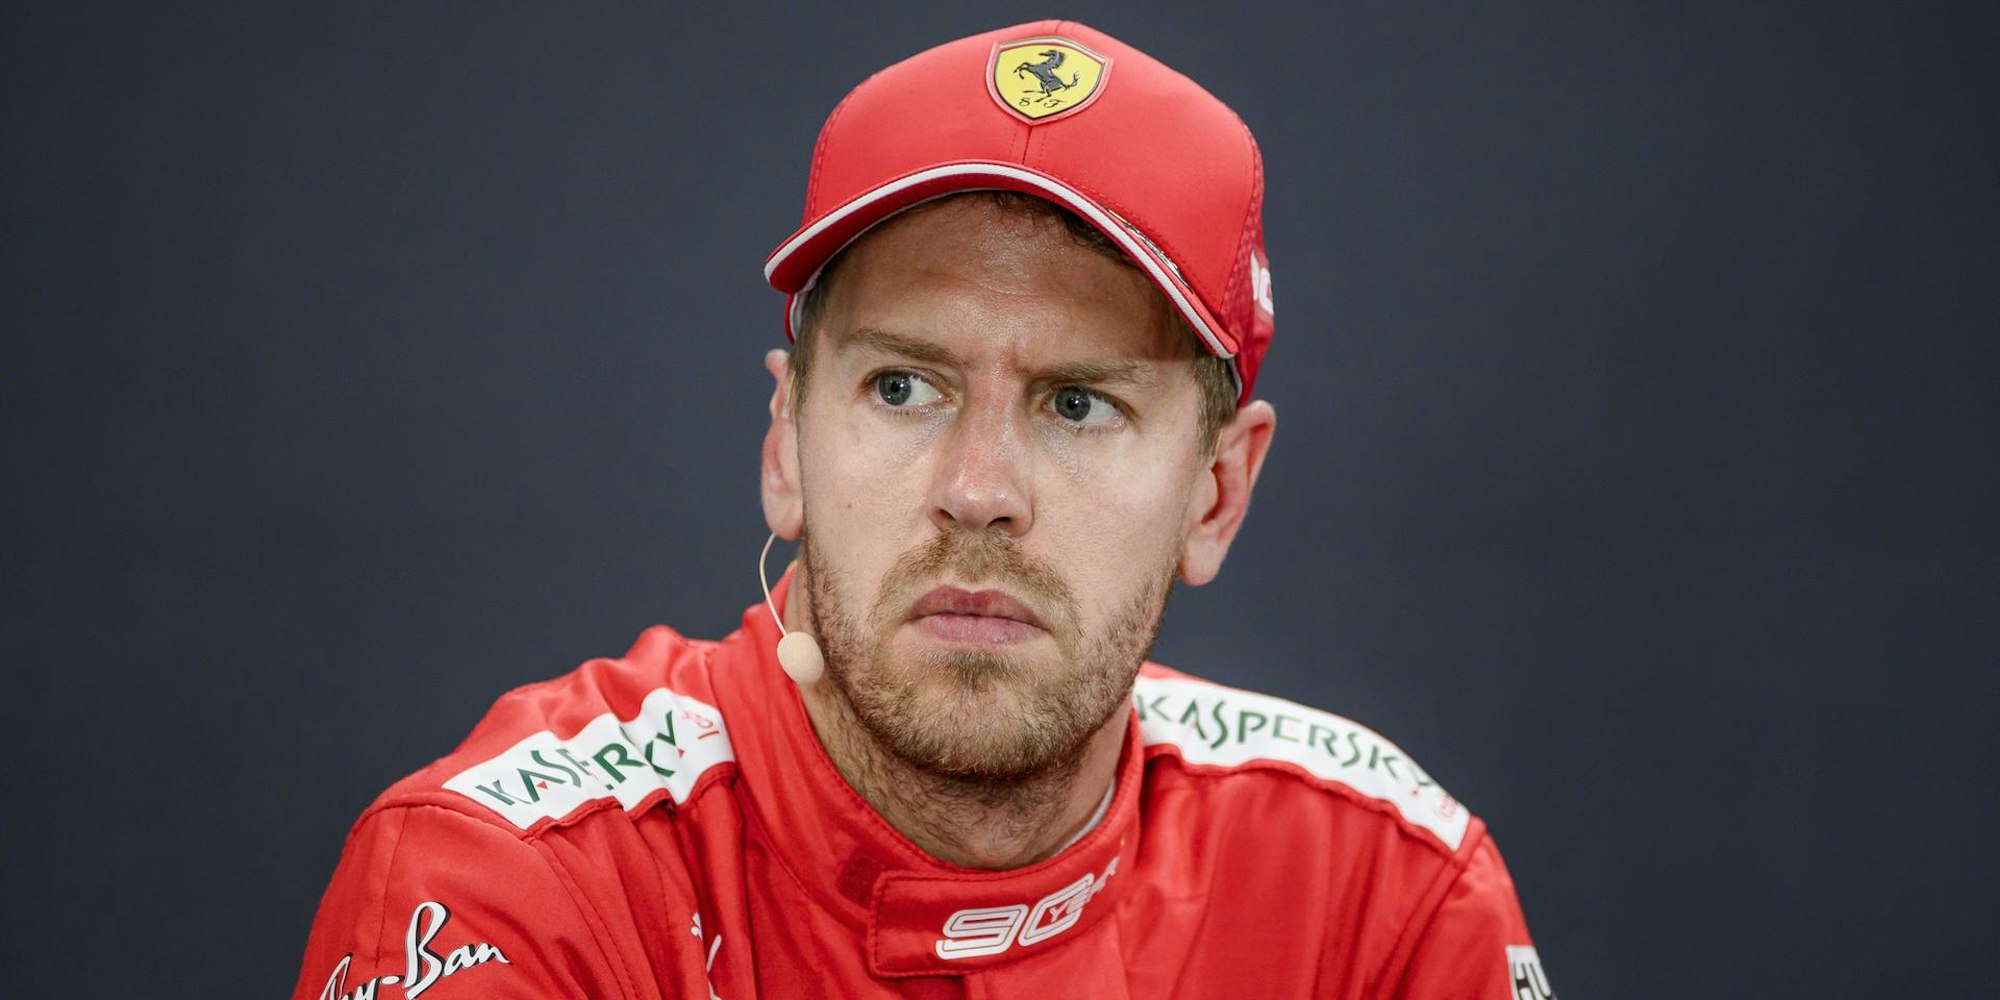 Sebastian Vettel dpa 251019